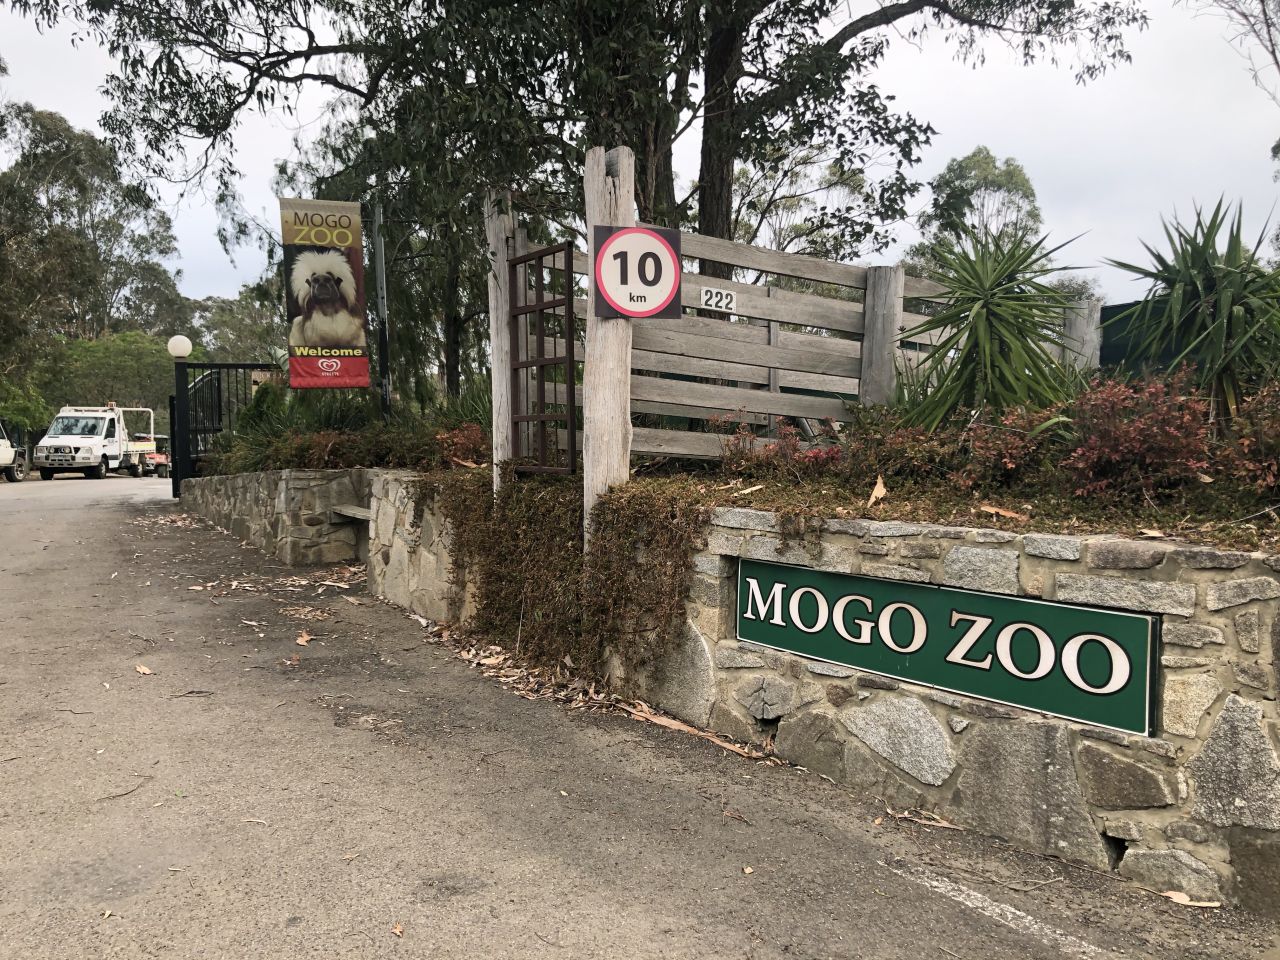 تقع حديقة موغو للحياة البرية في بلدة صغيرة تحمل نفس الاسم على ساحل نيو ساوث ويلز بأستراليا.